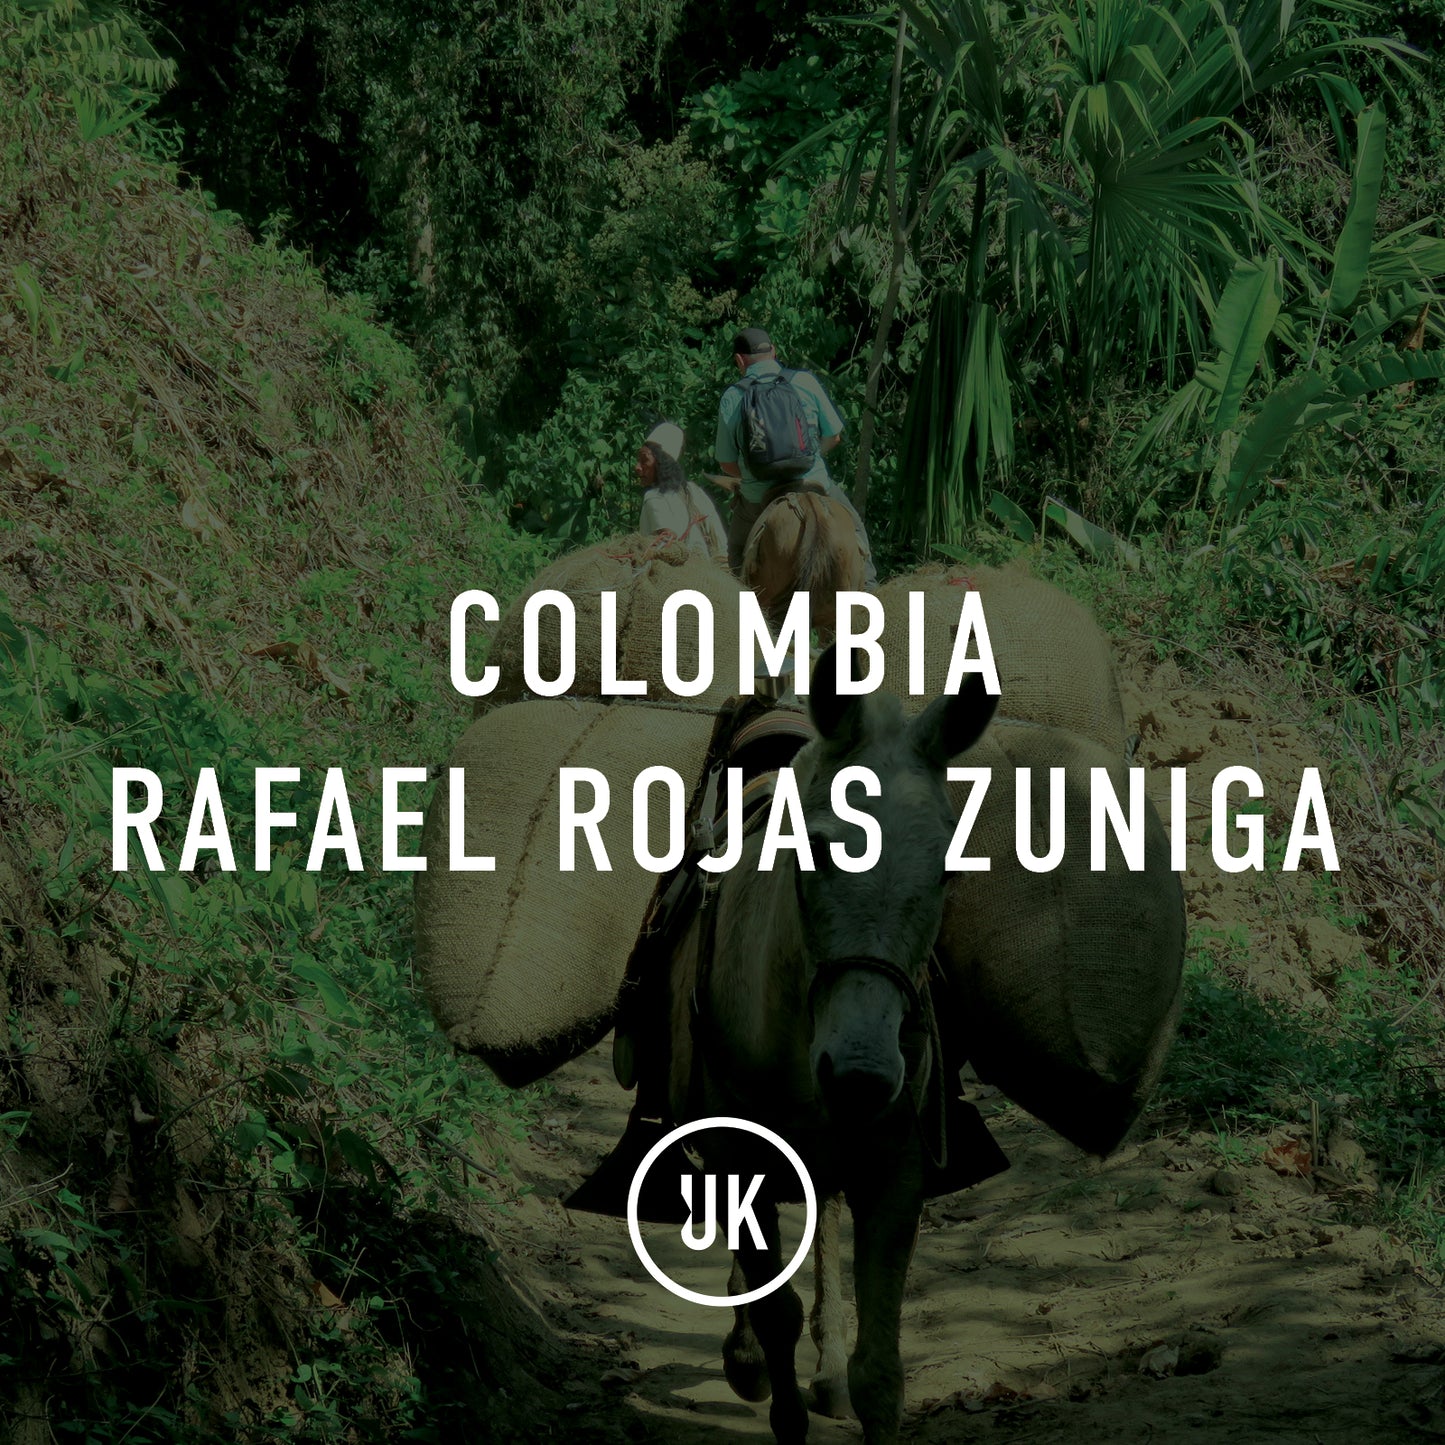 Colombia Rafael Rojas Zuniga 70kg